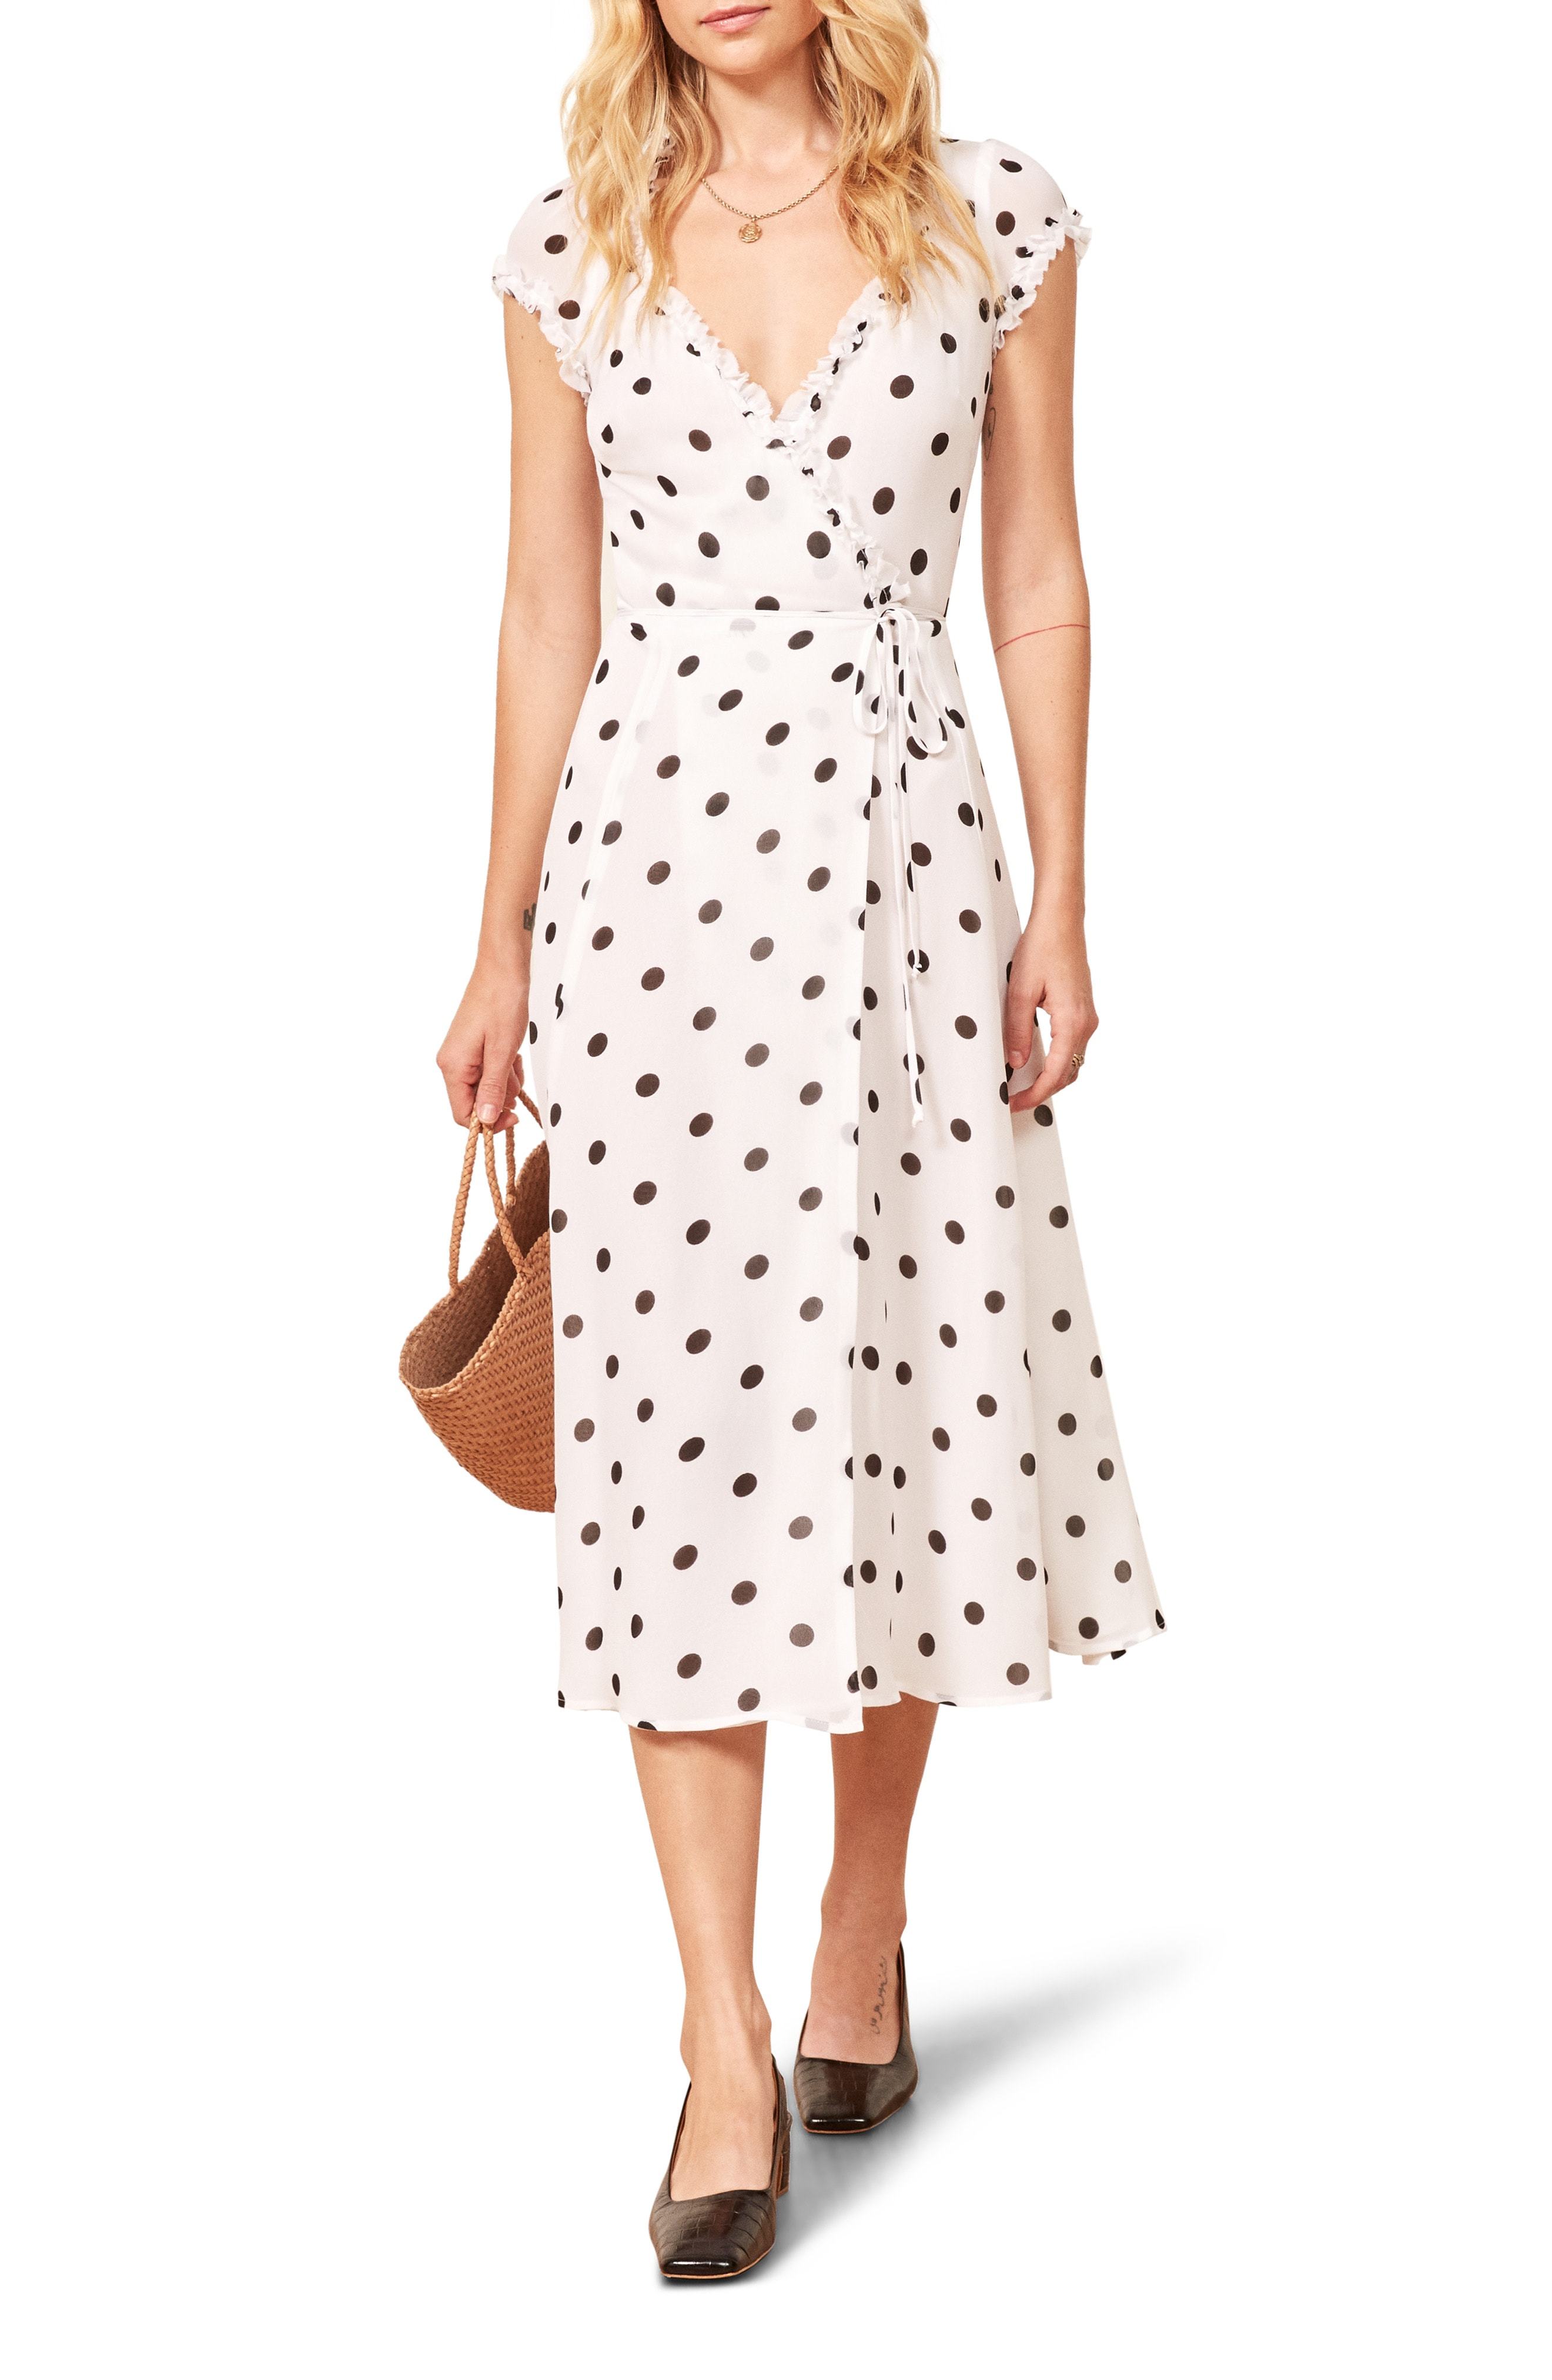 white polka dot wrap dress Big sale - OFF 63%